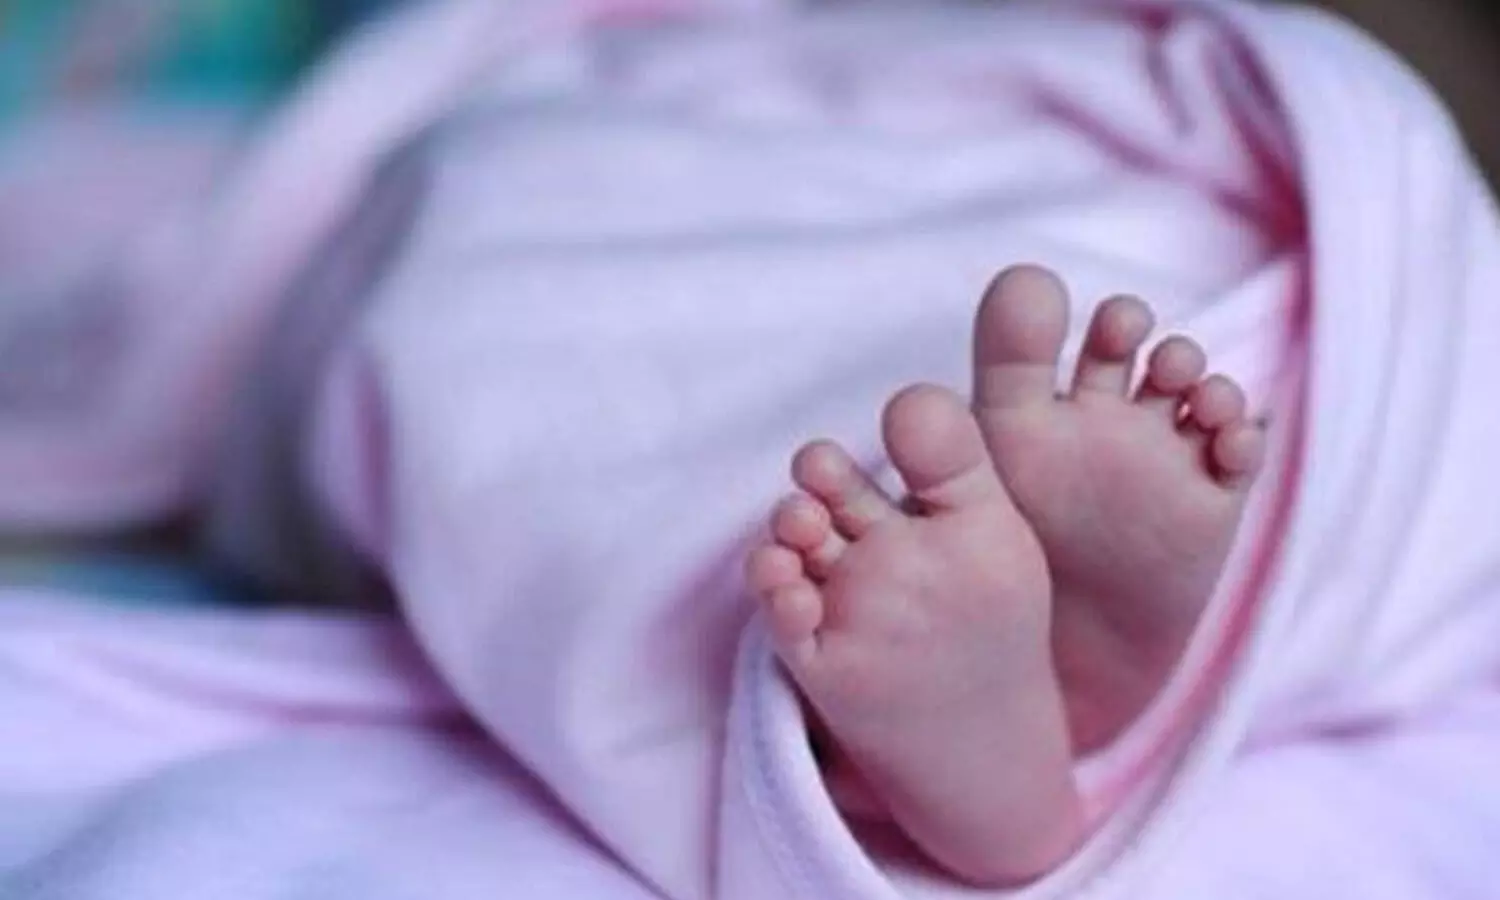 infant deadbody, nagar kurnool general hospital